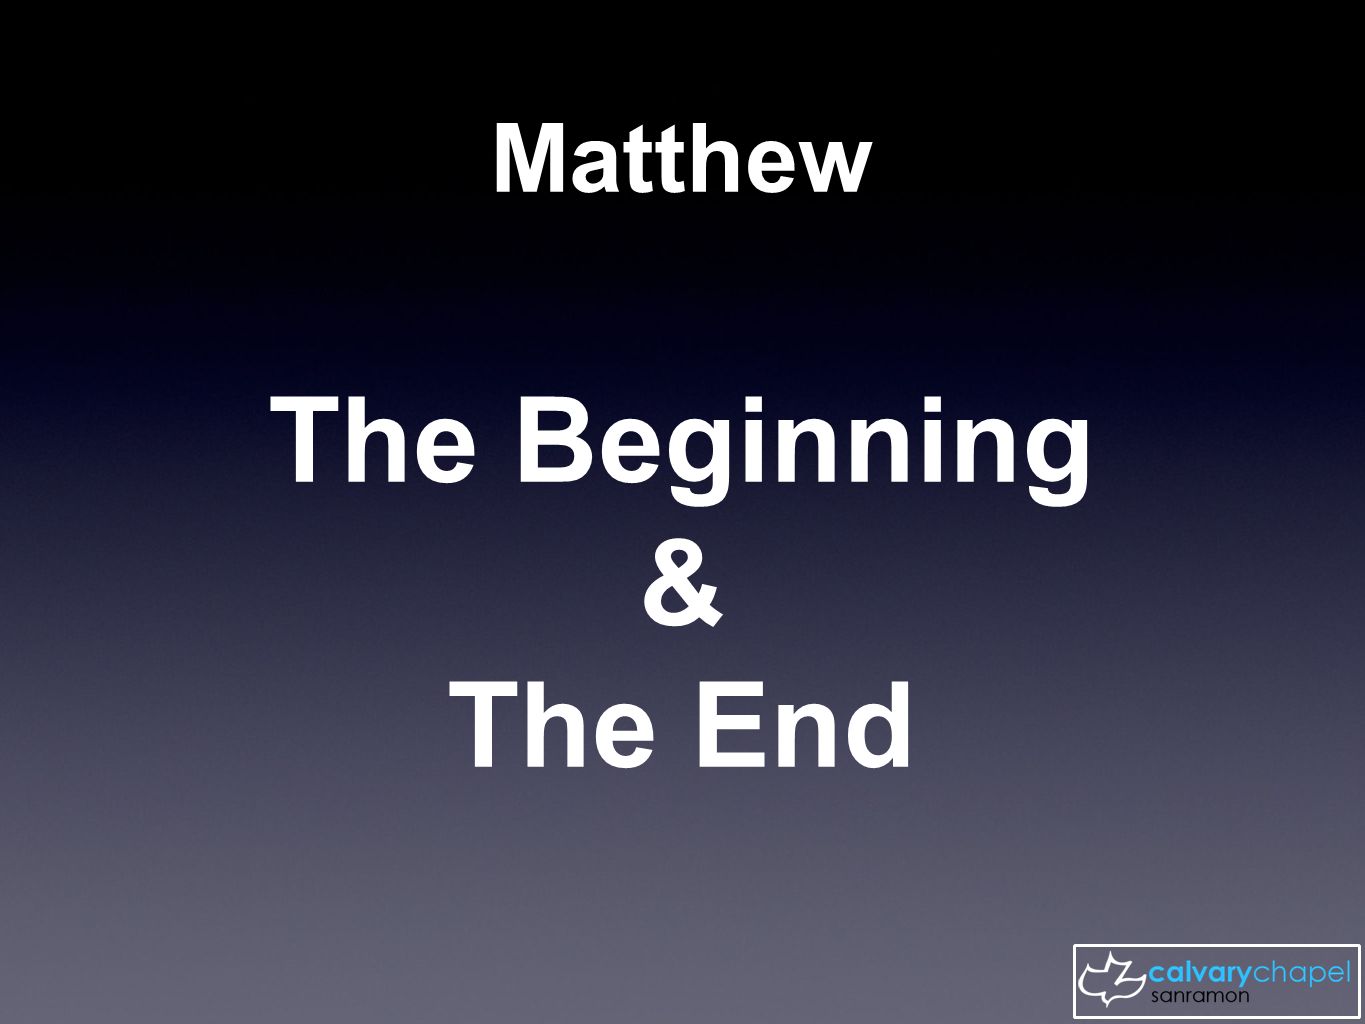 Matthew The Beginning & The End